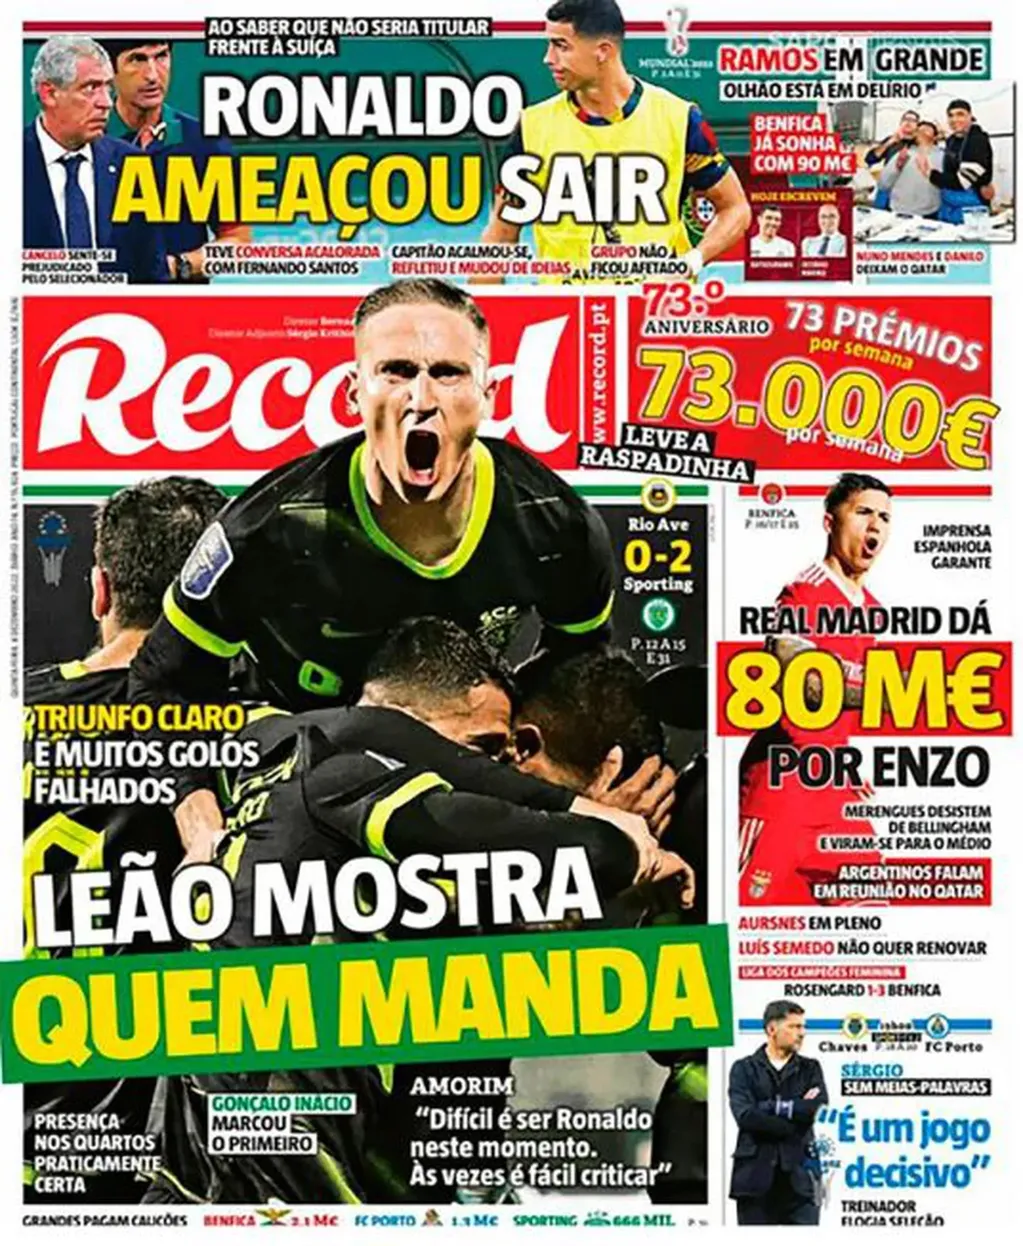 El diario Récord había dejado entrever que Cristiano Ronaldo podría irse del Mundial.